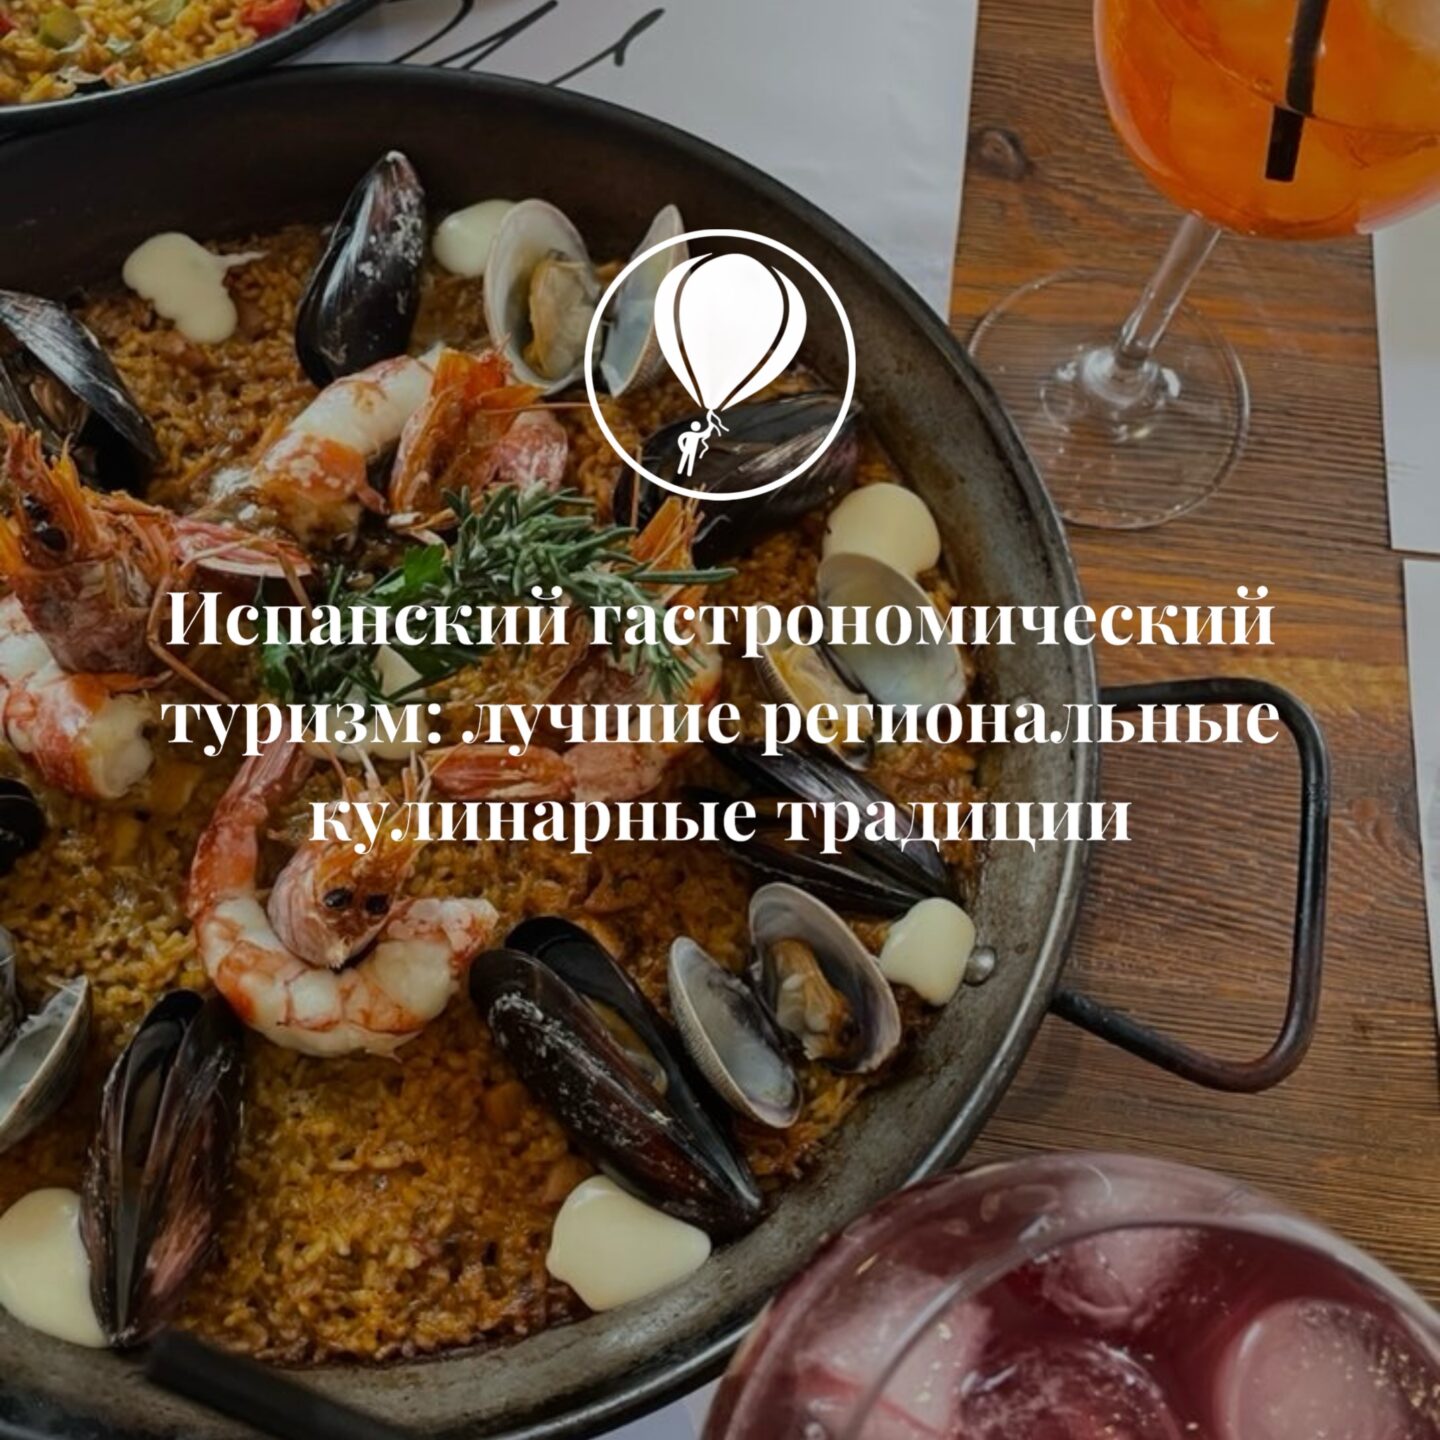 Испанский гастрономический туризм: лучшие региональные кулинарные традиции